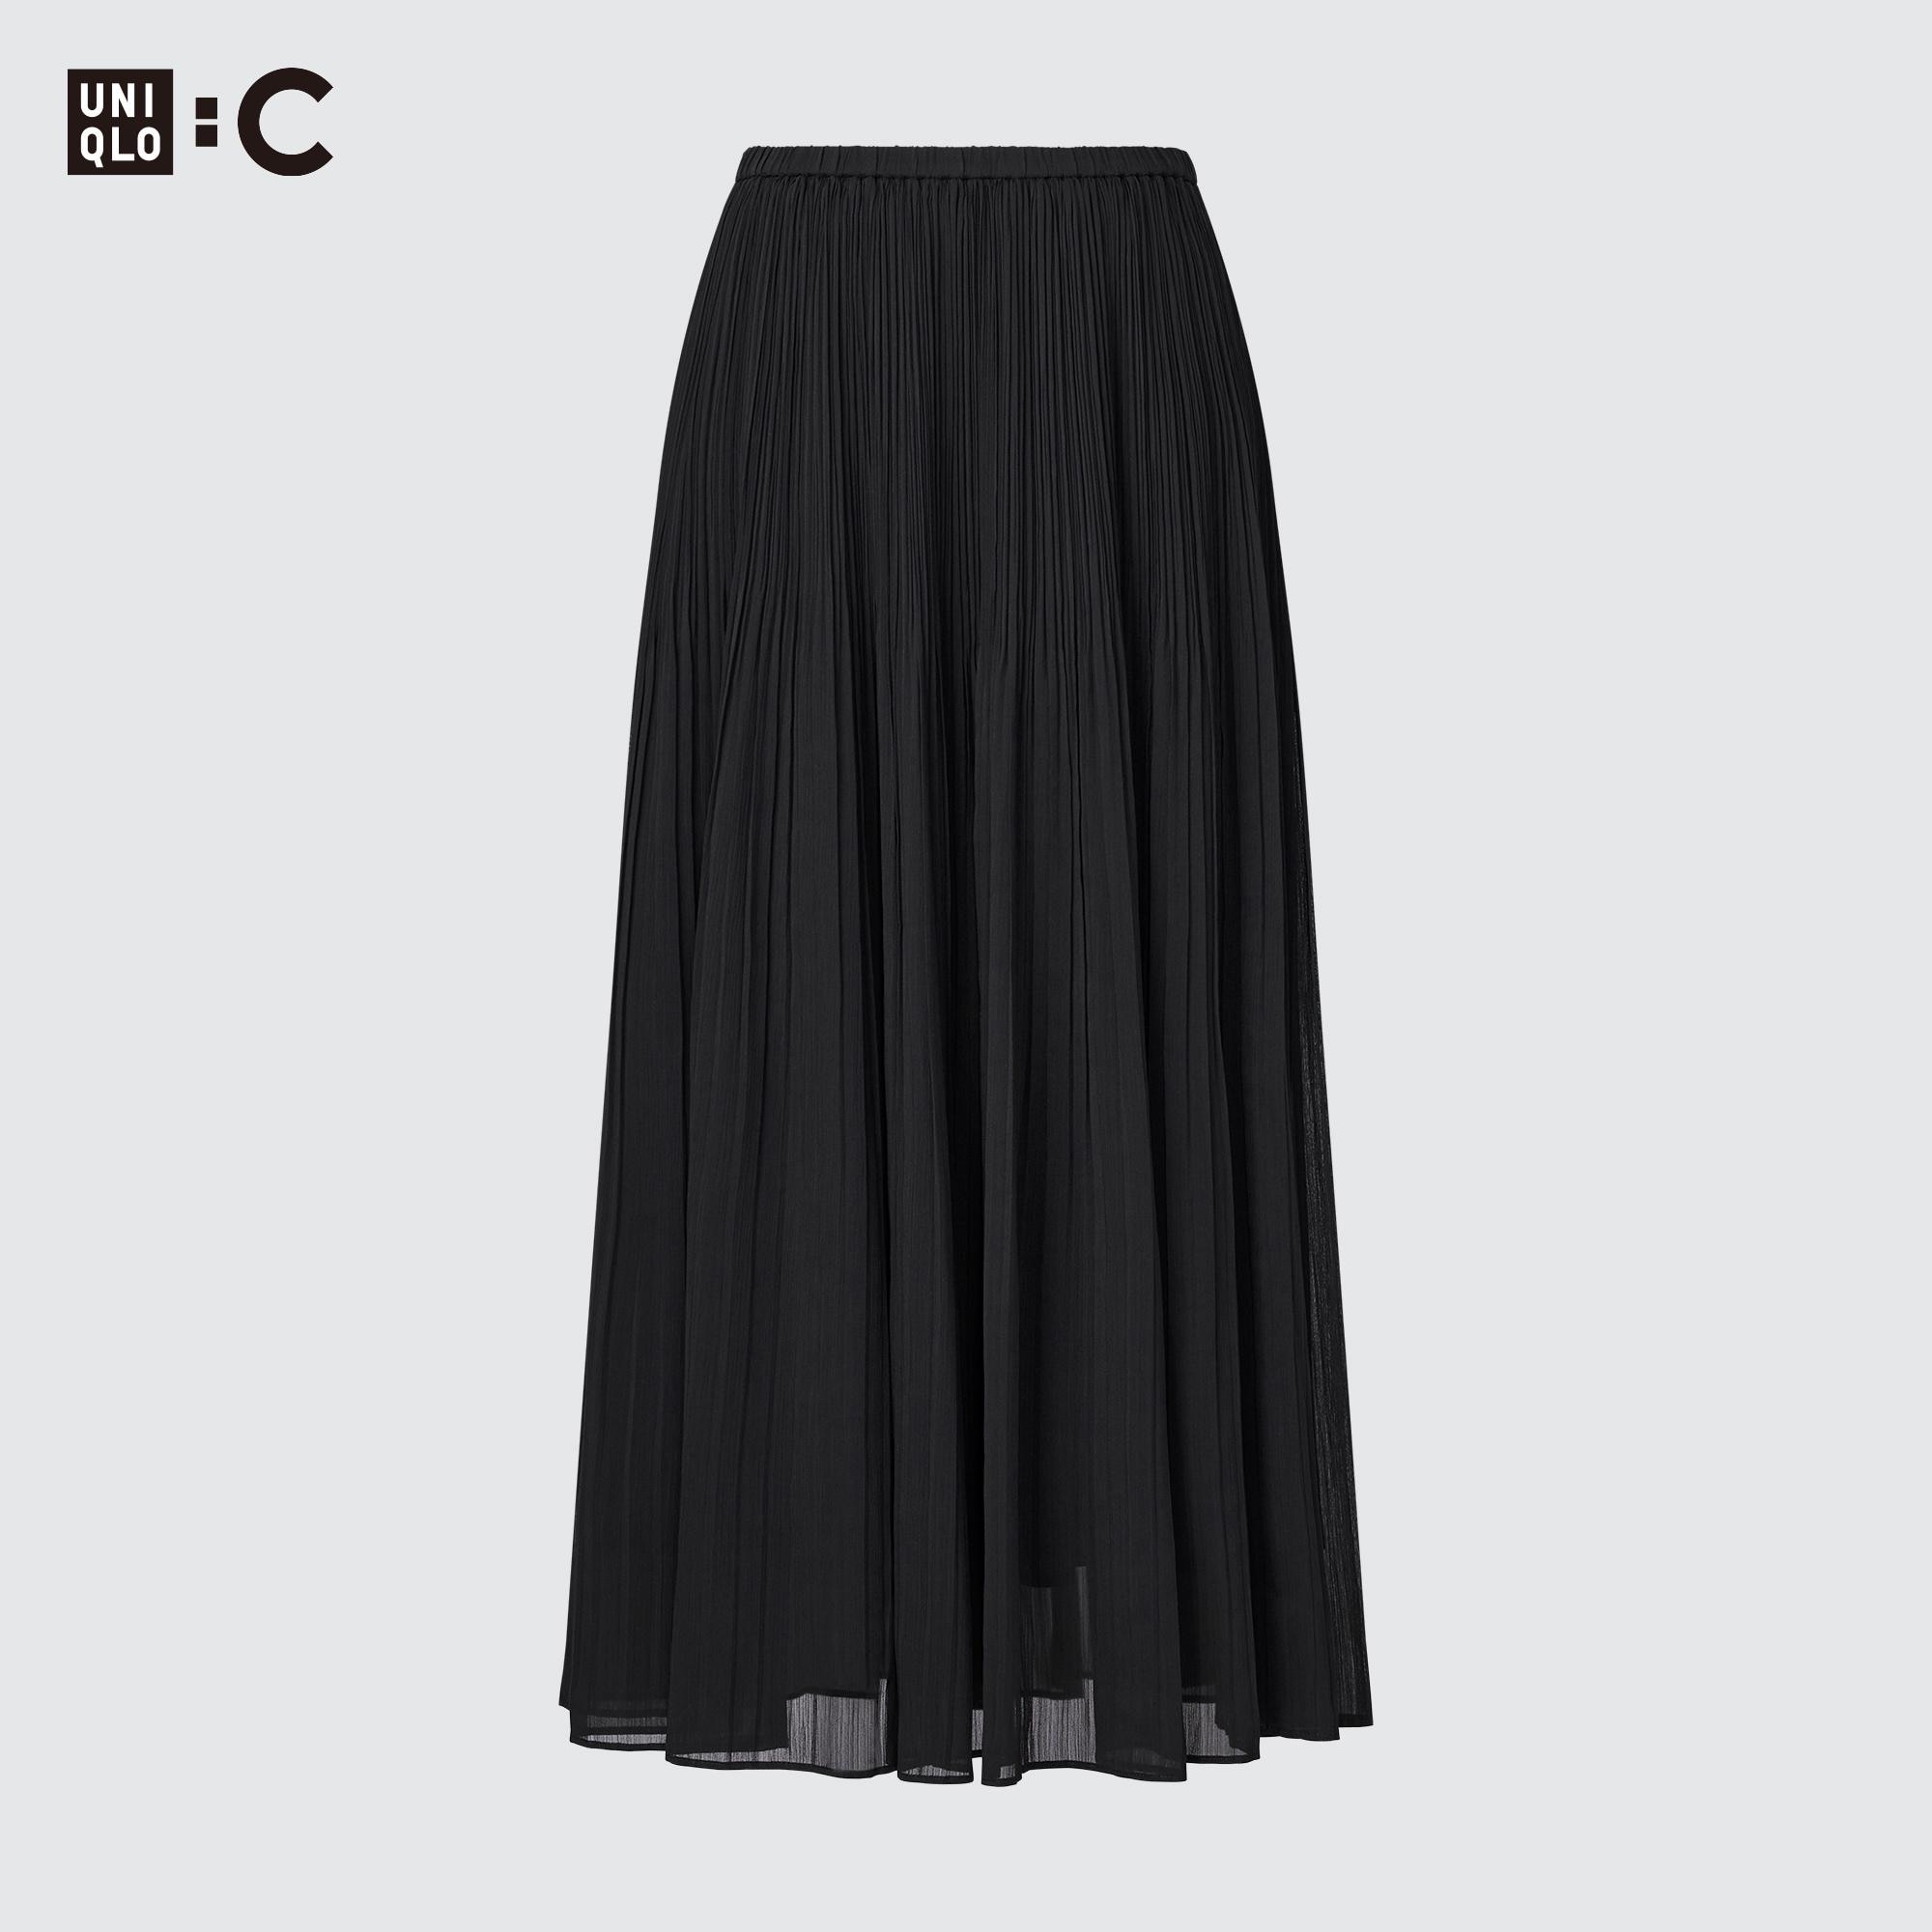 Chân váy xếp ly nhỏ chân váy tennis dáng ngắn phong cách Hàn Quốc có quần  lót trong màu đen trắng - MixASale